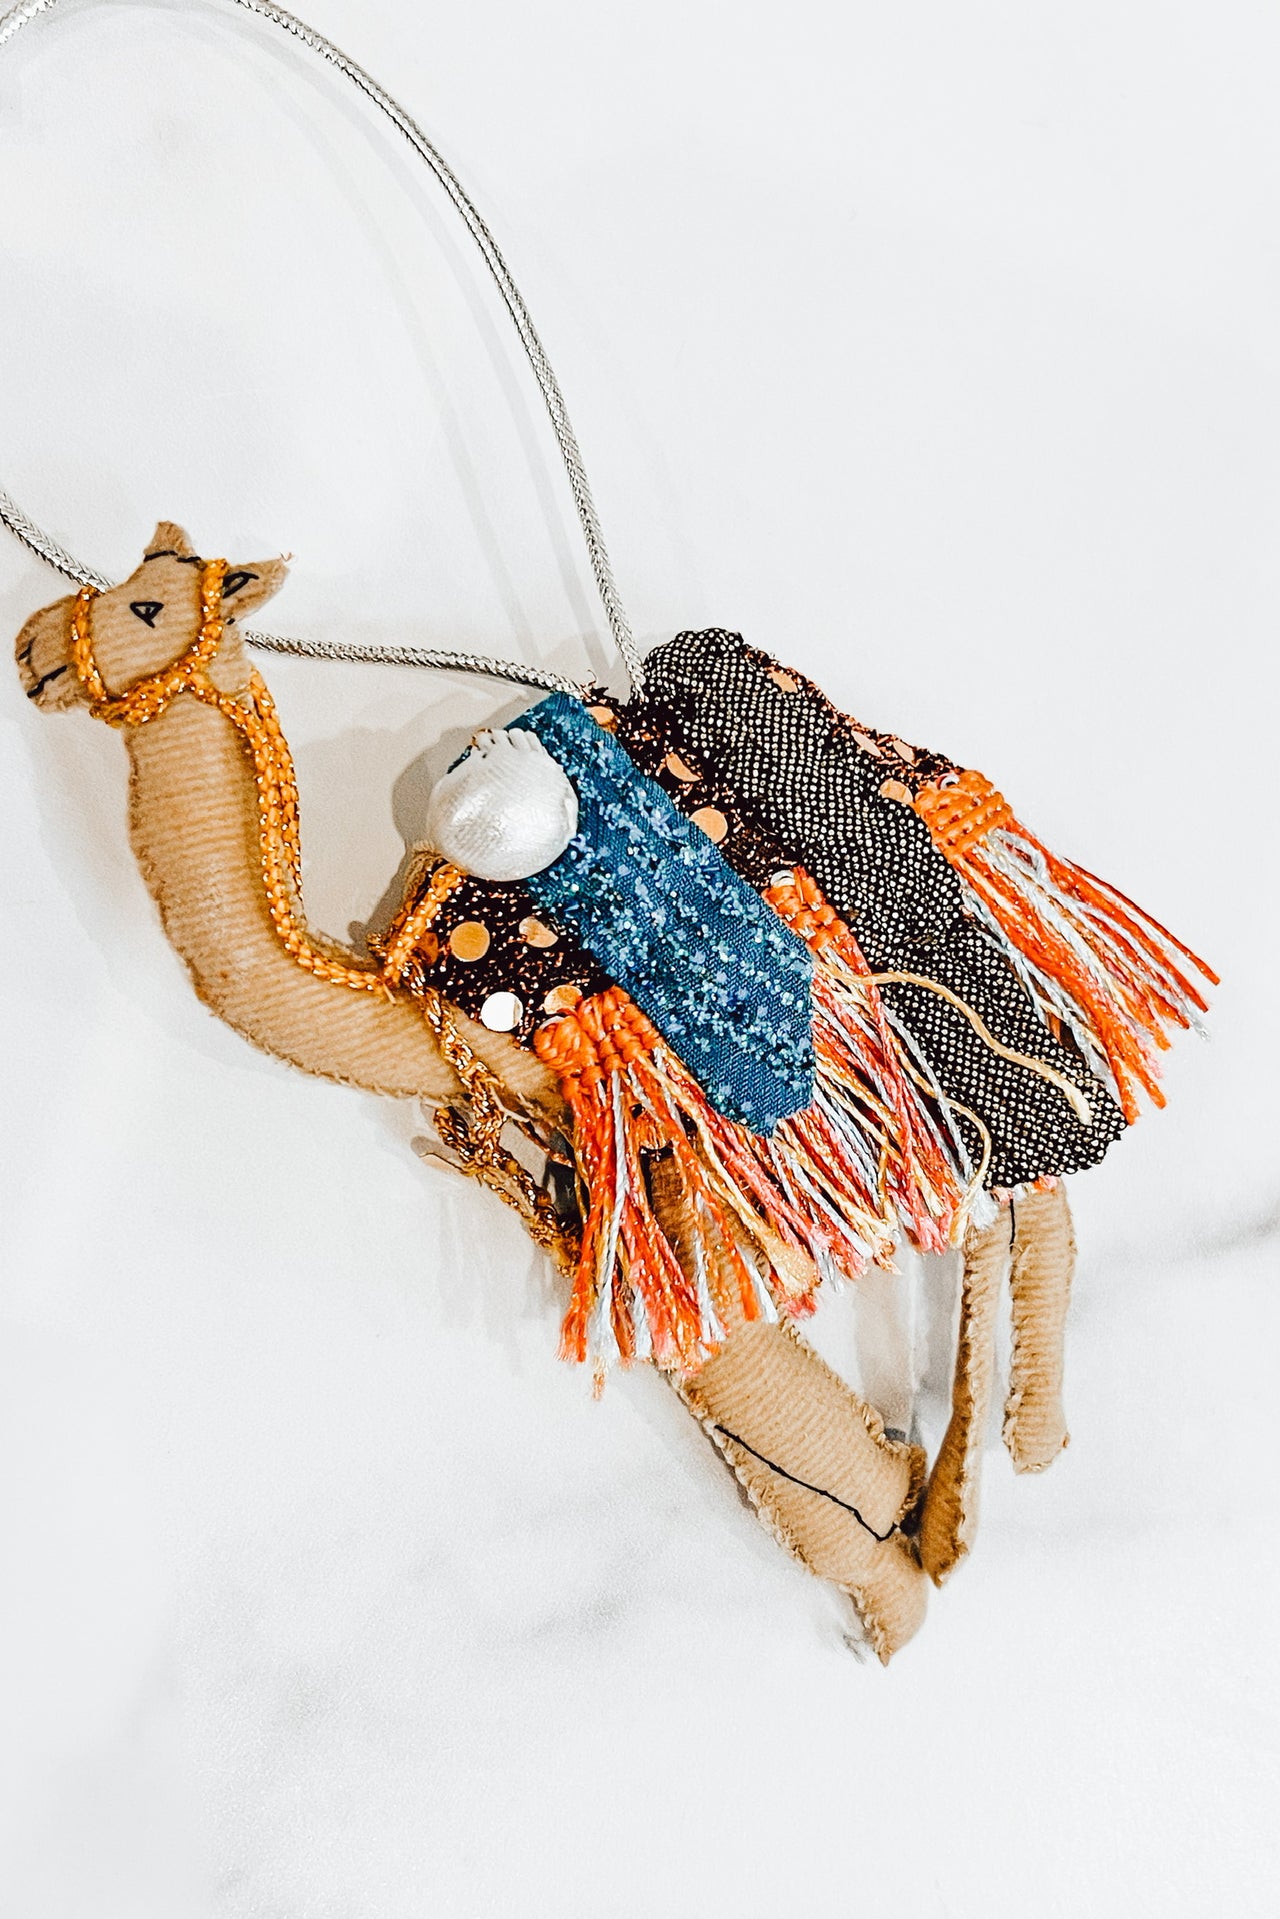 Handmade Sparkly Camel Ornament